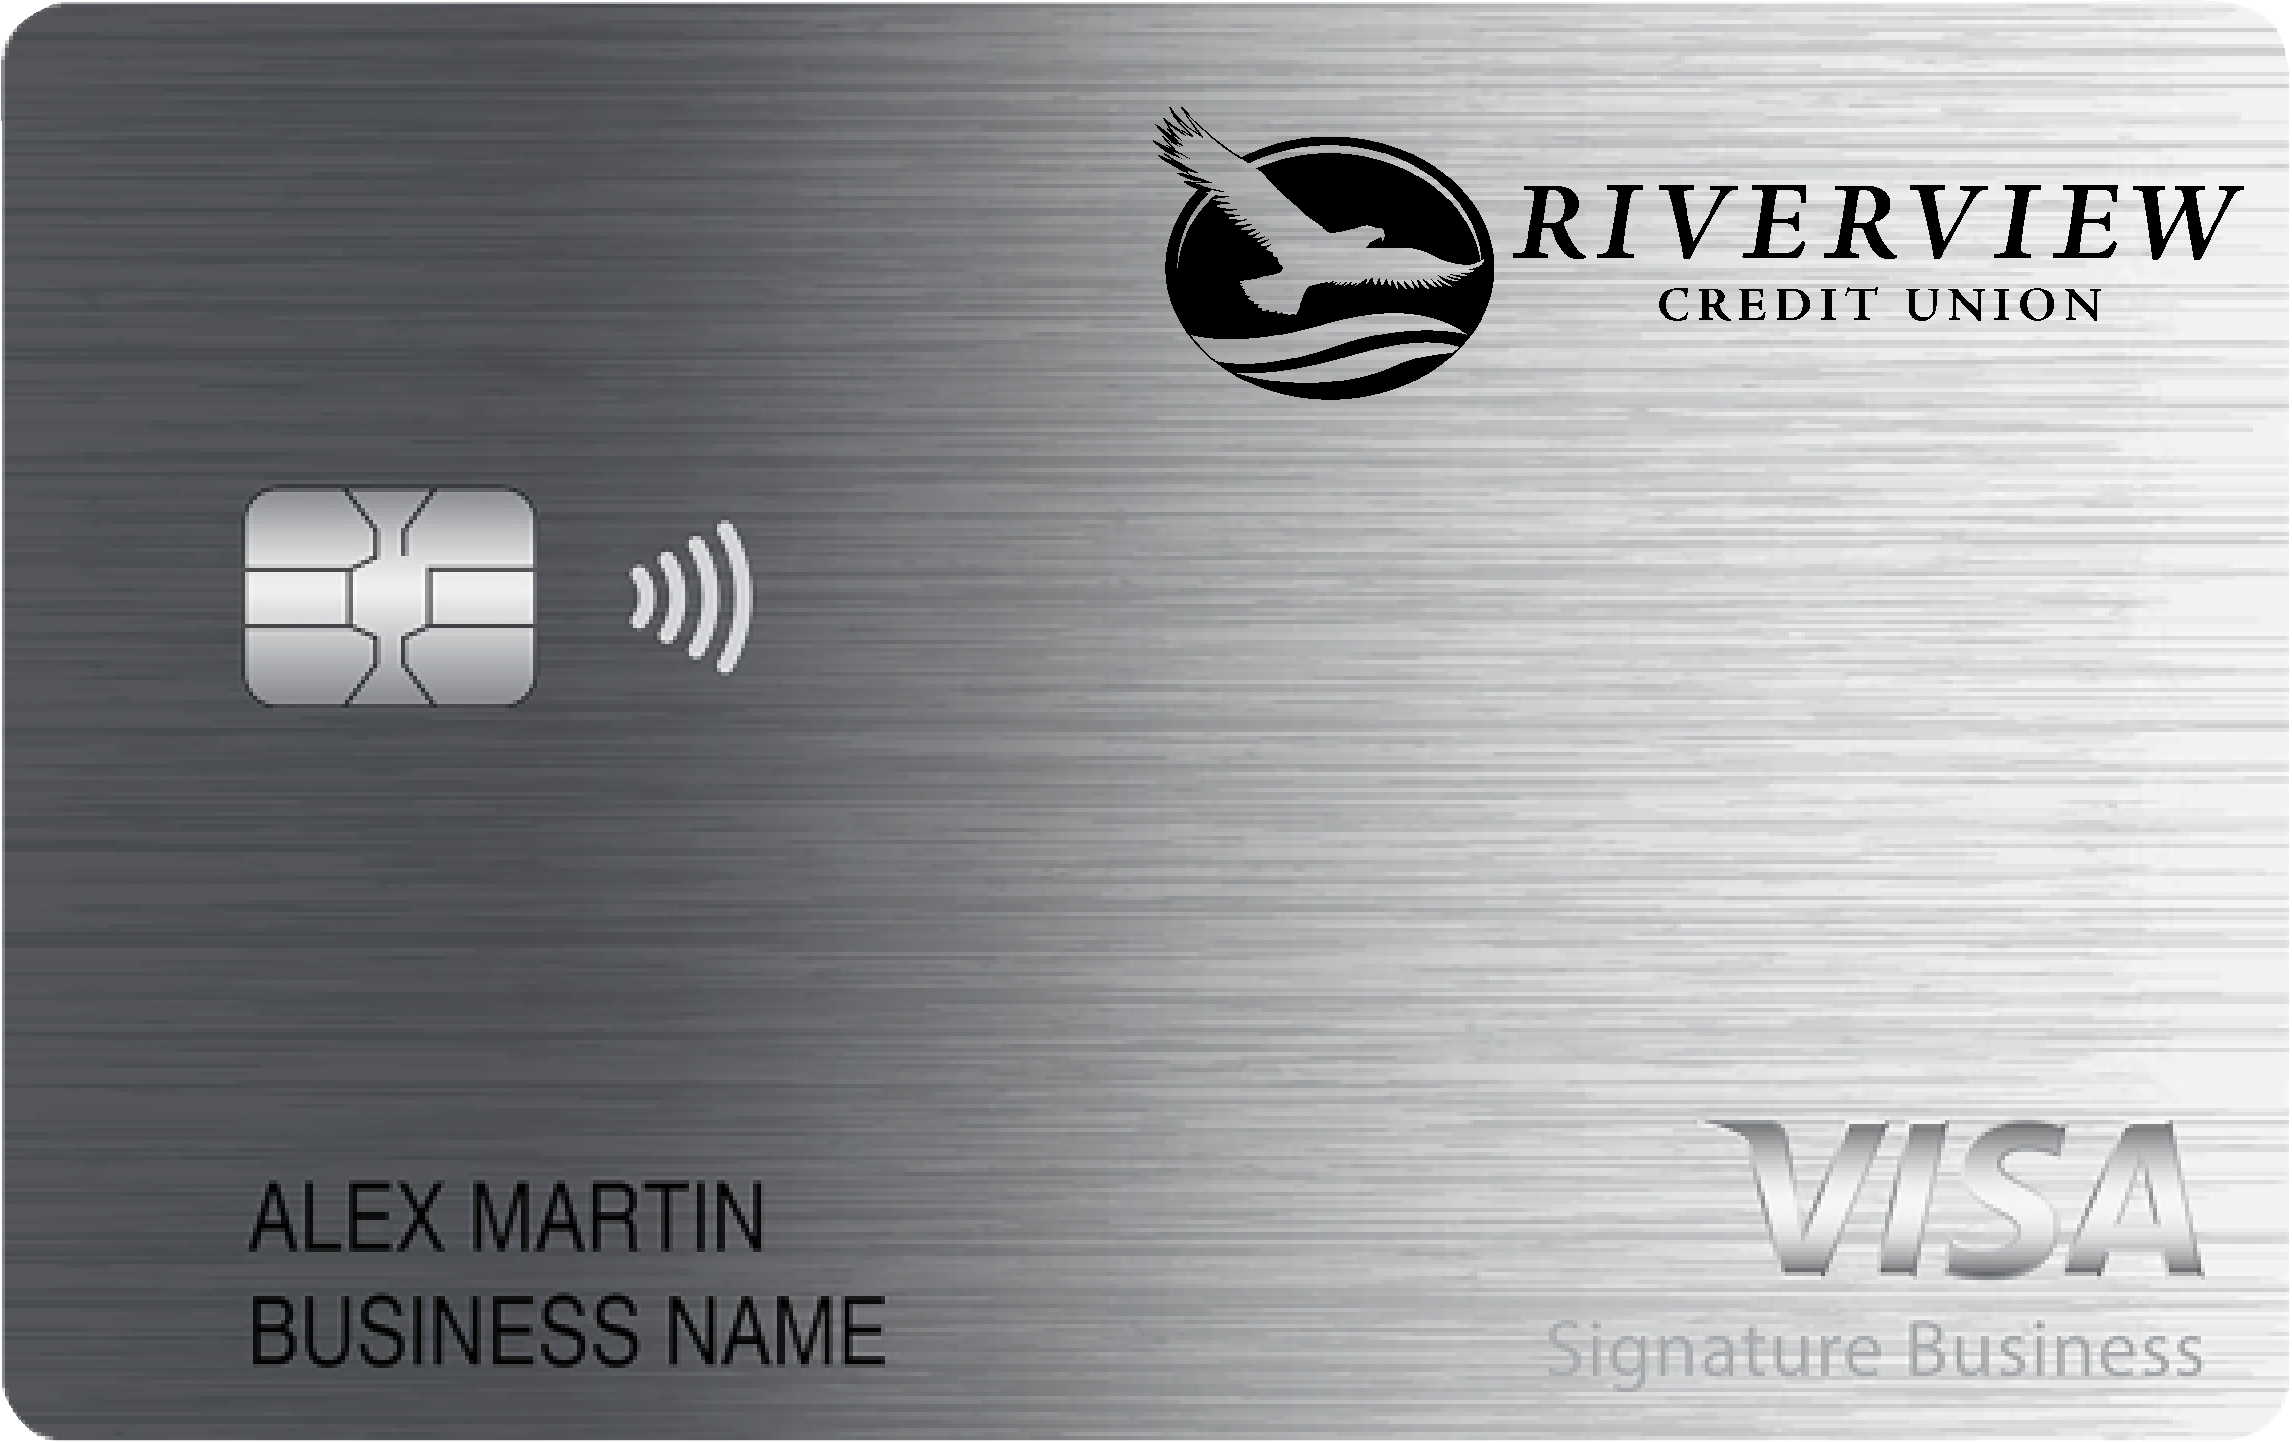 Riverview Credit Union Smart Business Rewards Card